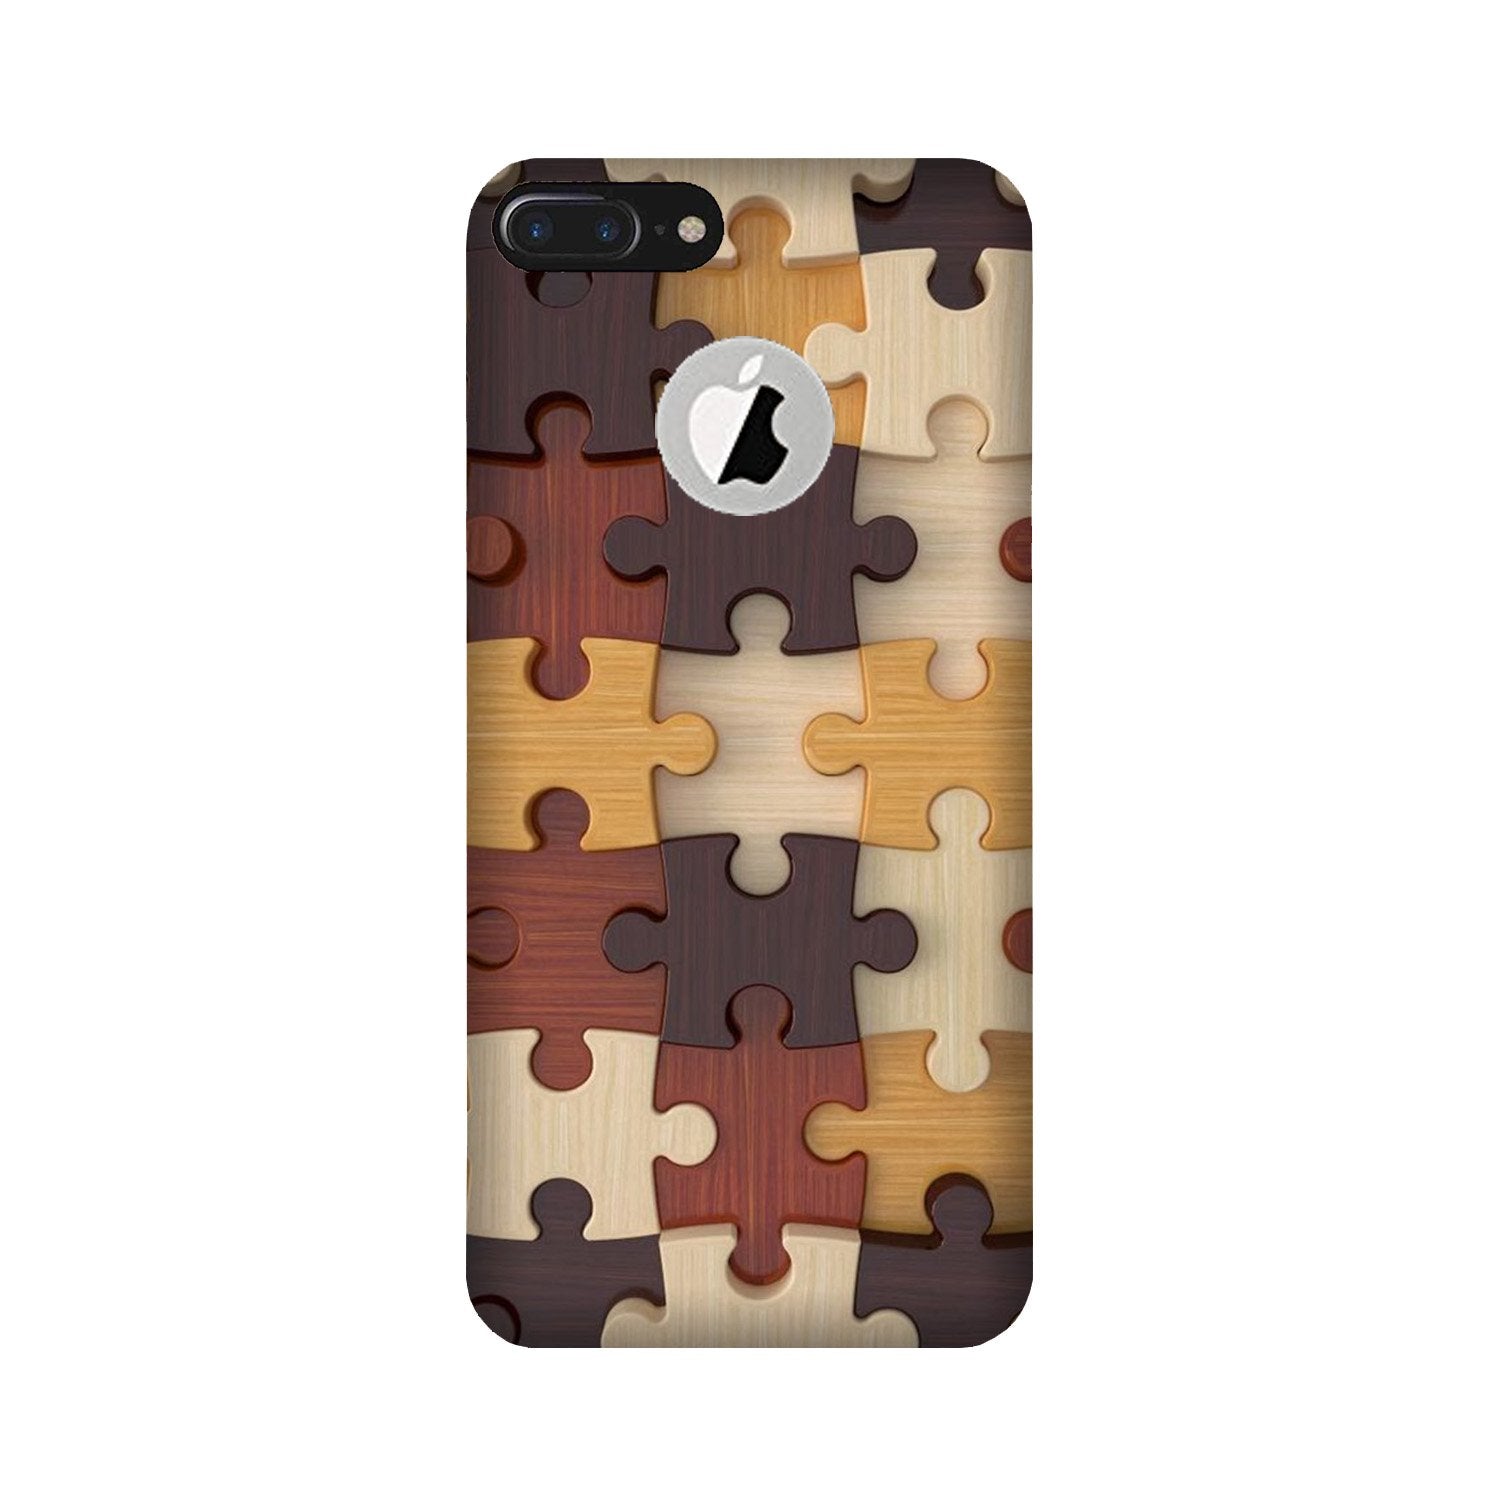 Puzzle Pattern Case for iPhone 7 Plus logo cut (Design No. 217)